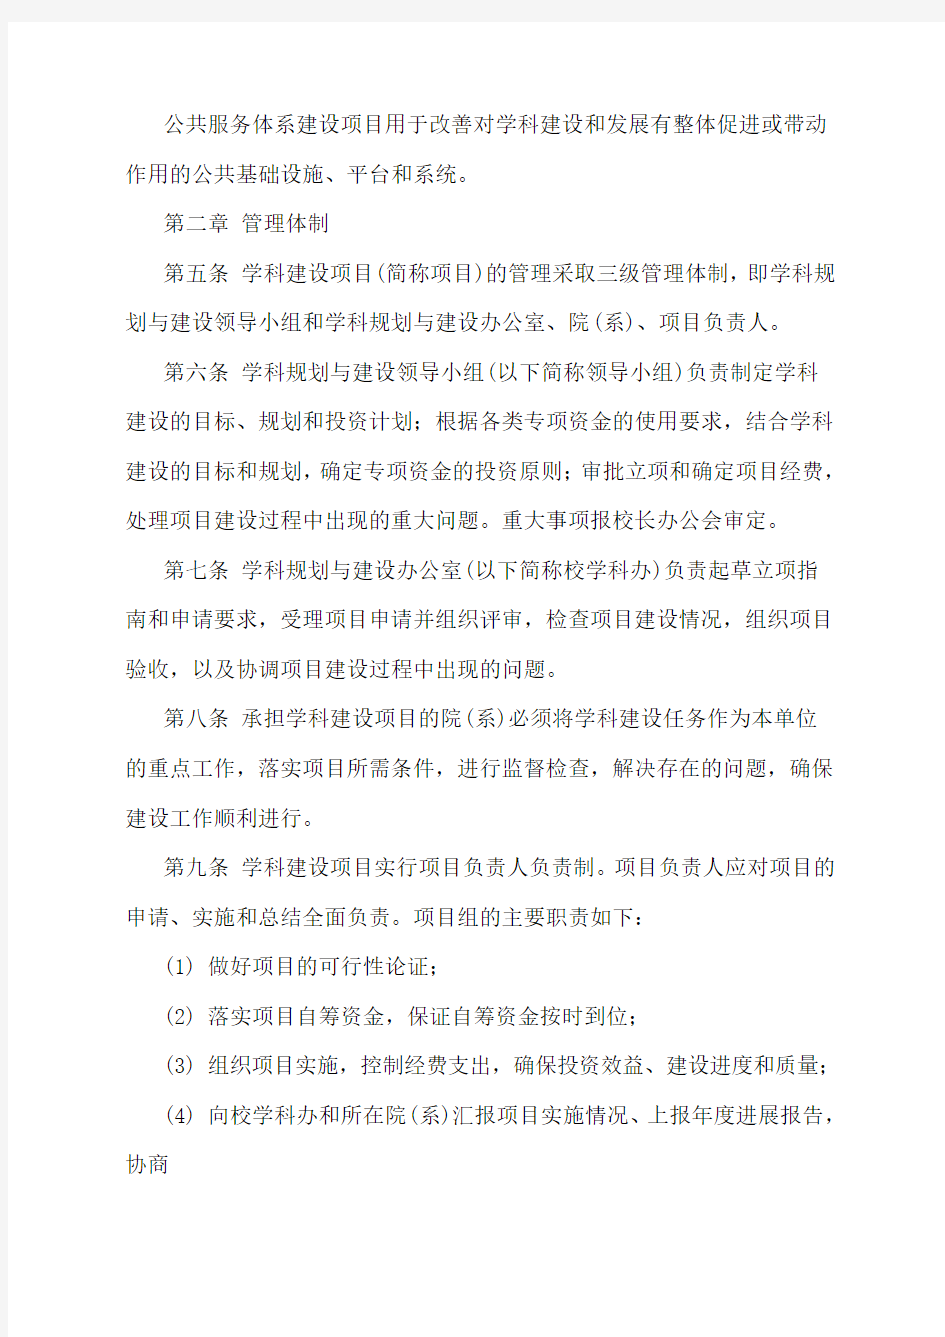 北京航空航天大学学科建设项目管理暂行办法 